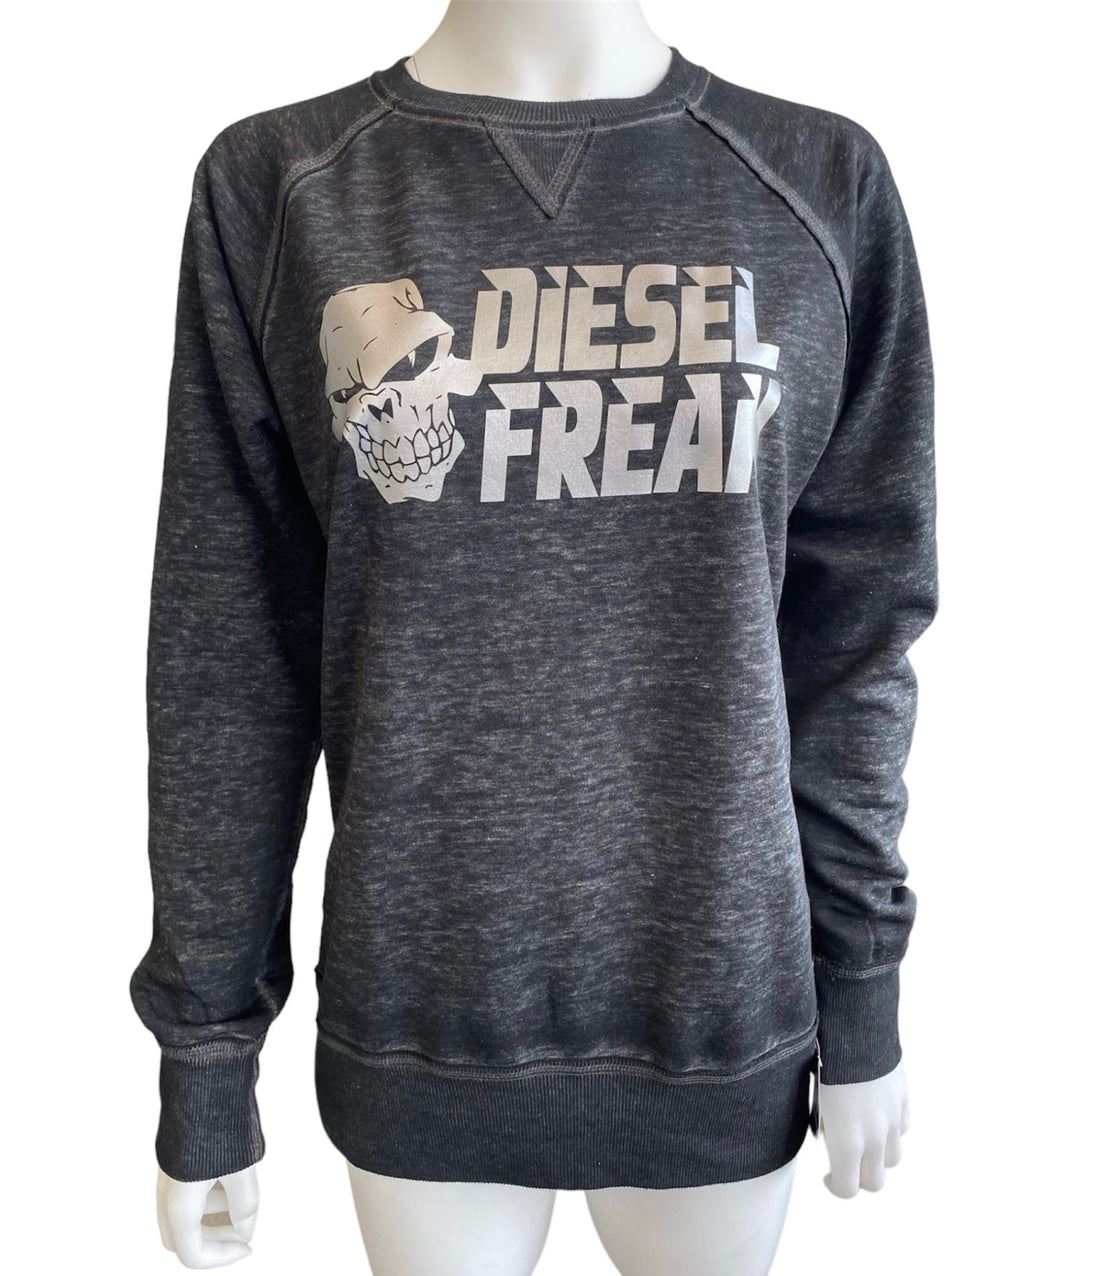 Metallic Stacked Diesel Freak Crewneck - Diesel Freak